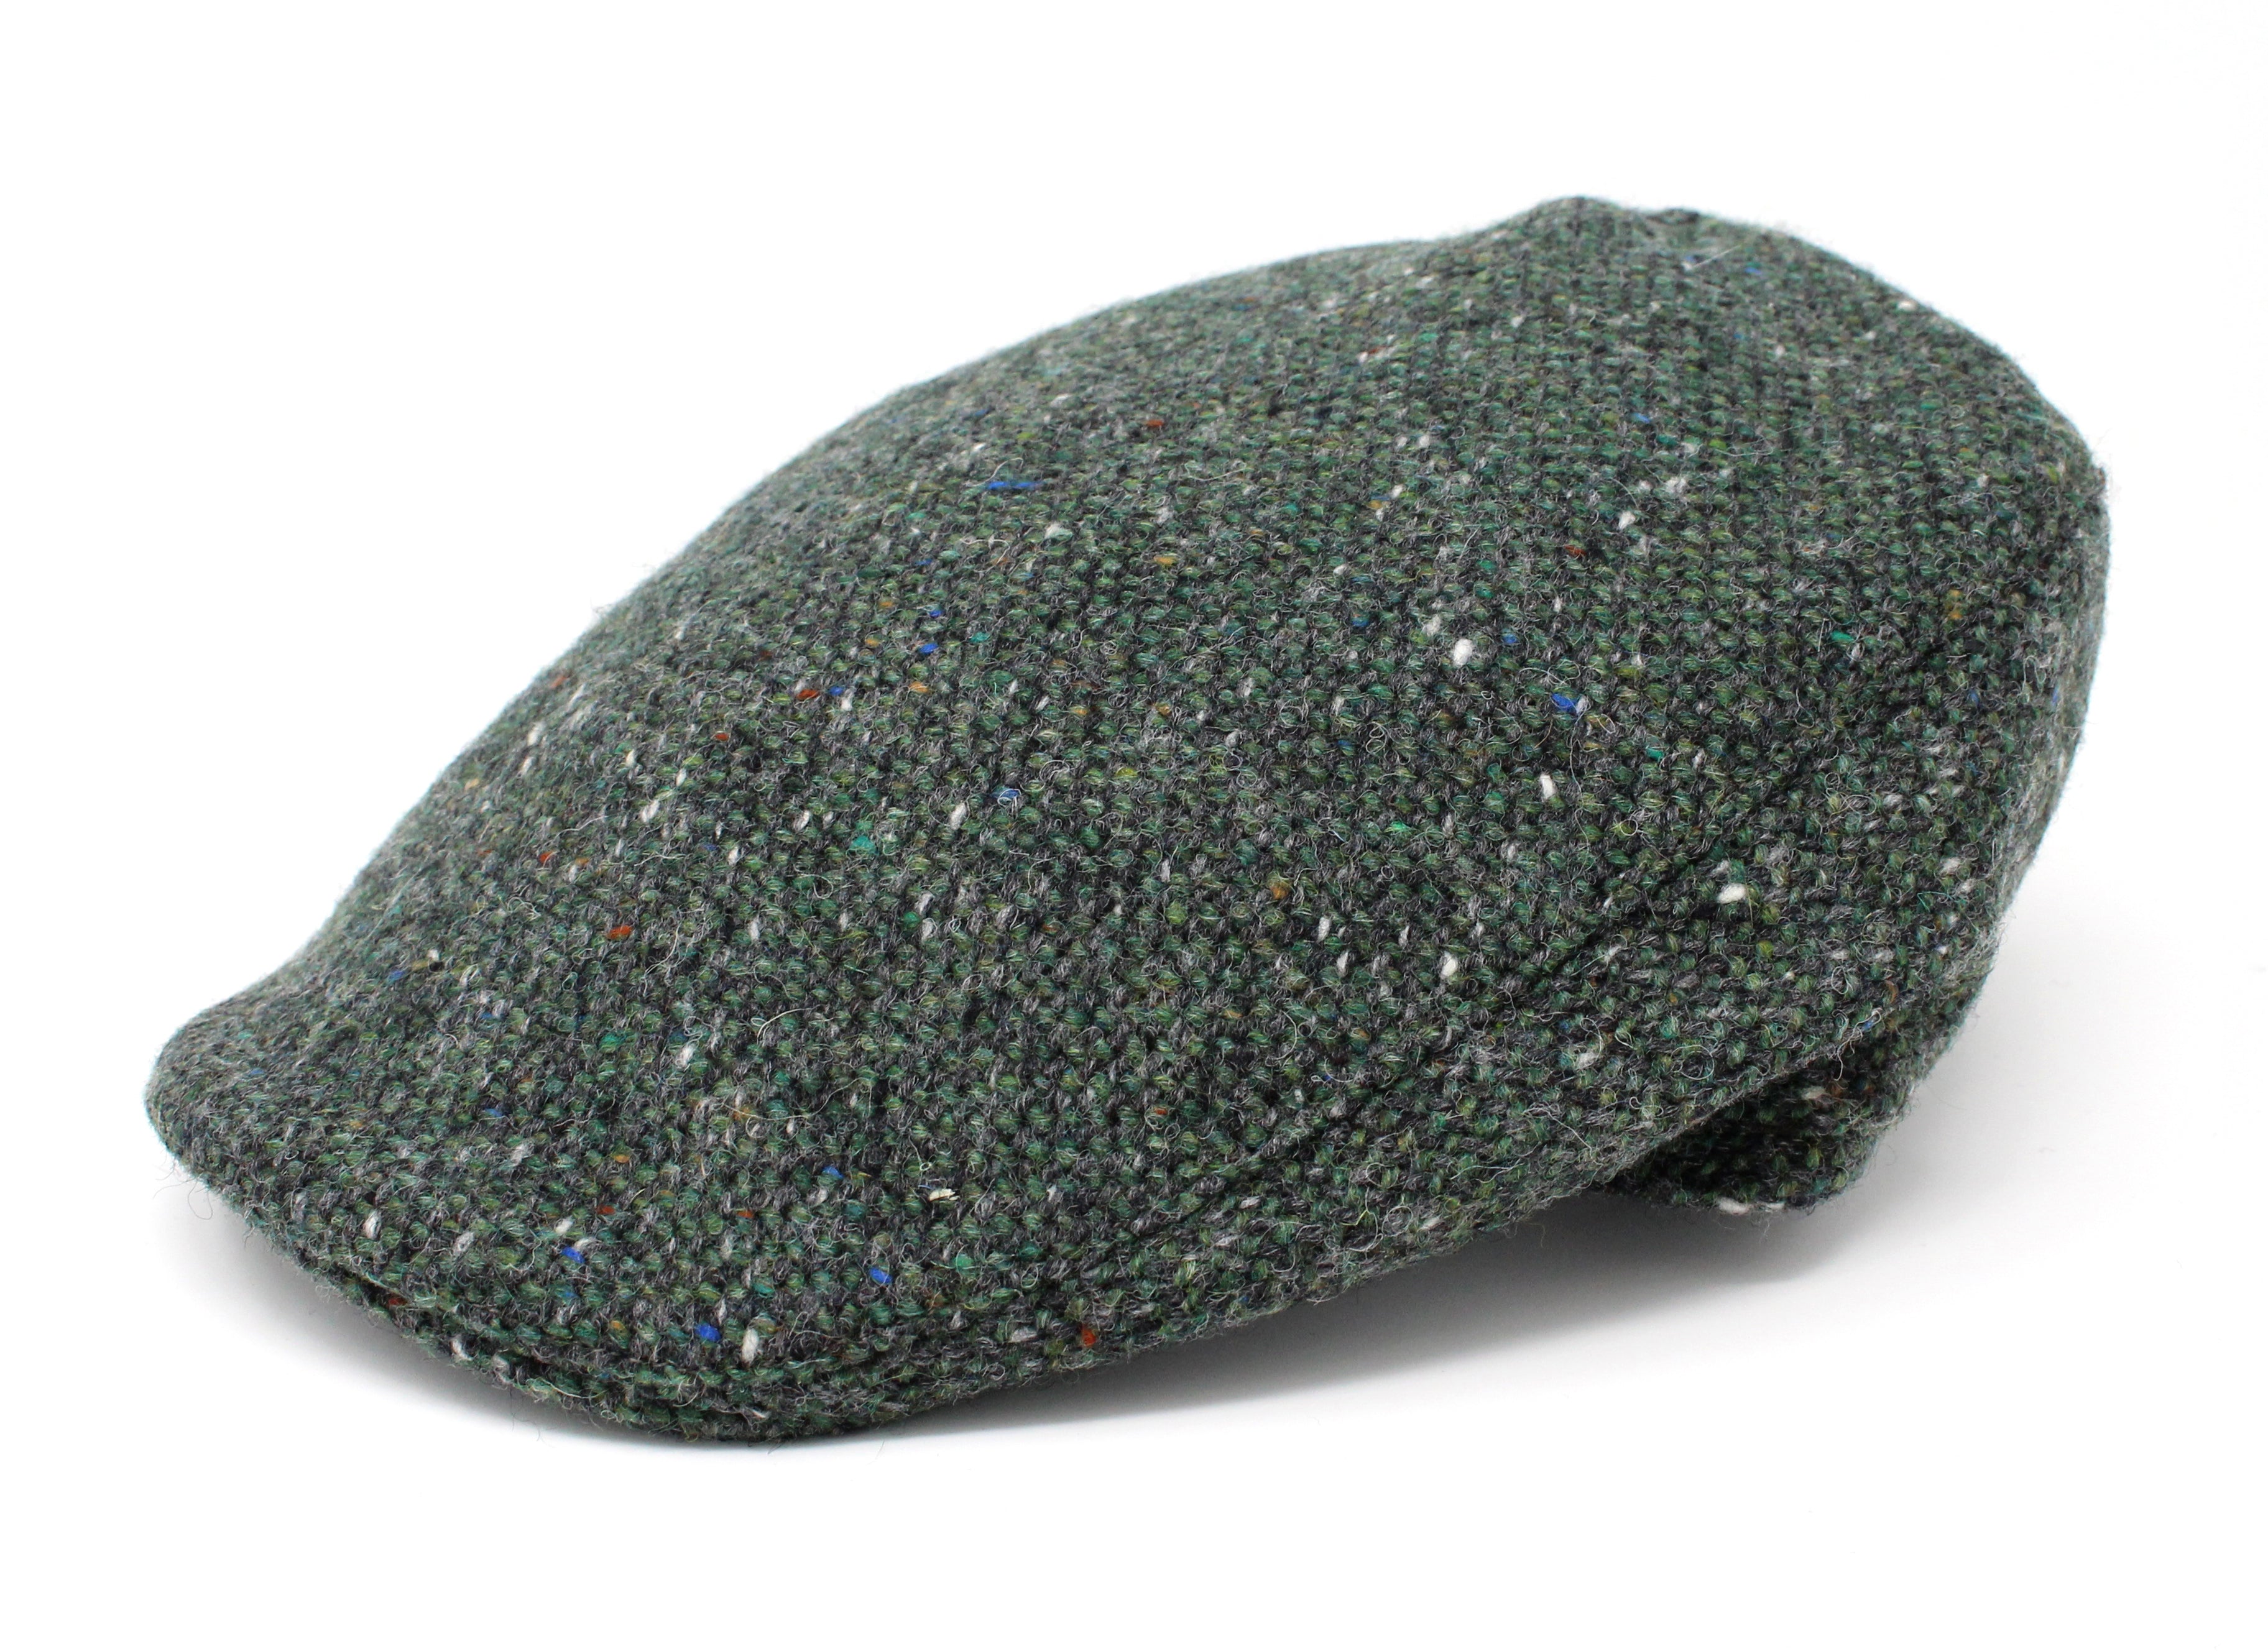 Hanna Hats Donegal Touring Cap Tweed Dark Green Fleck Salt & Pepper